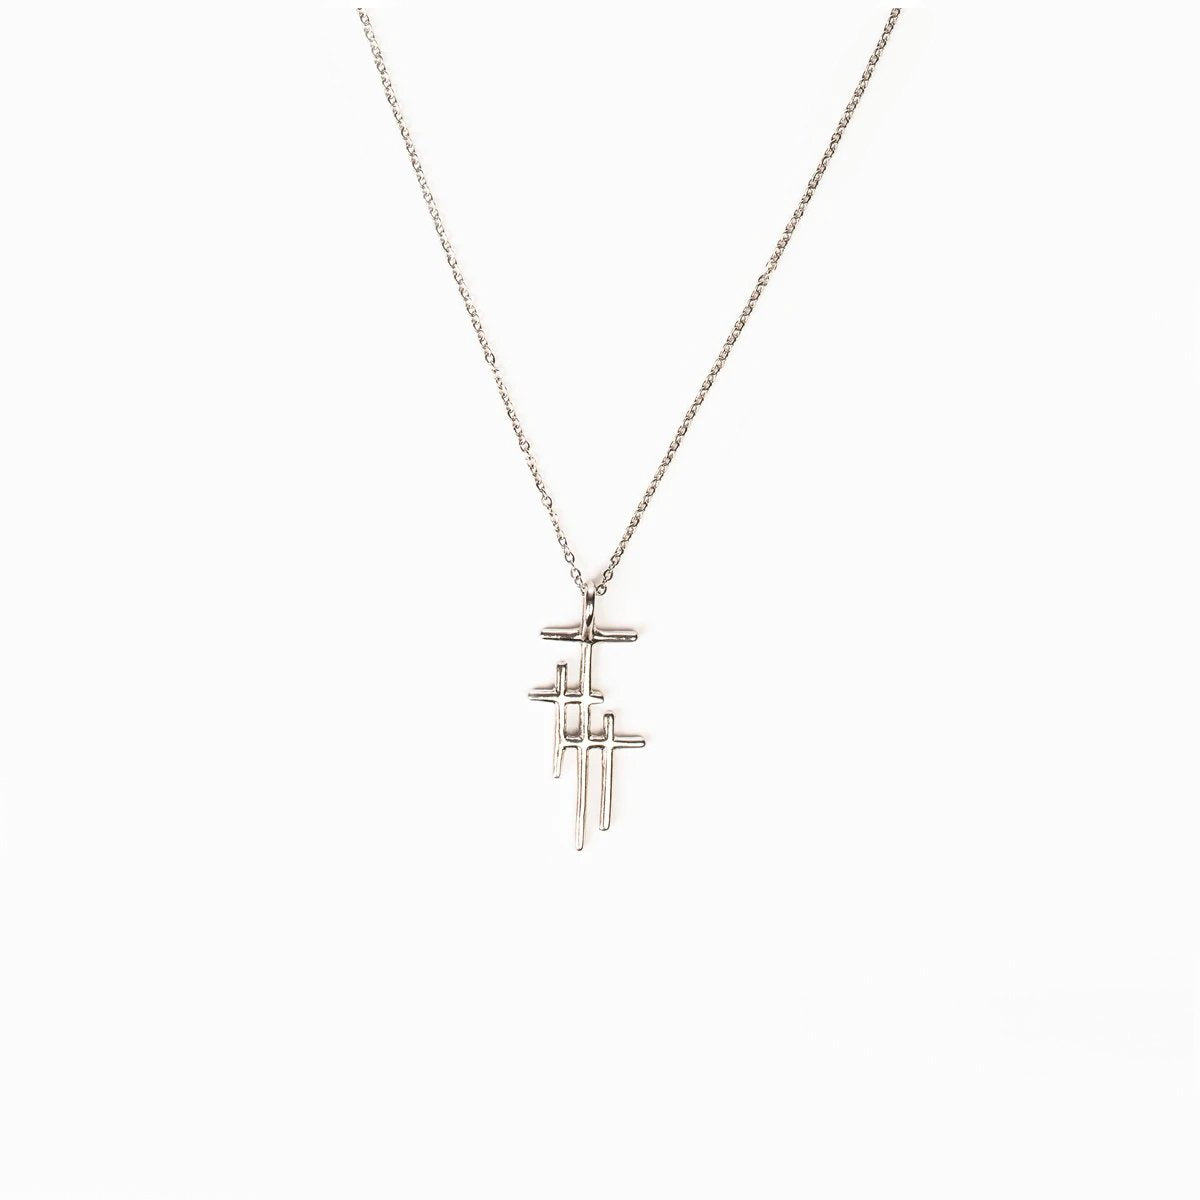 MSMH - Faithful Light Three Cross Necklace